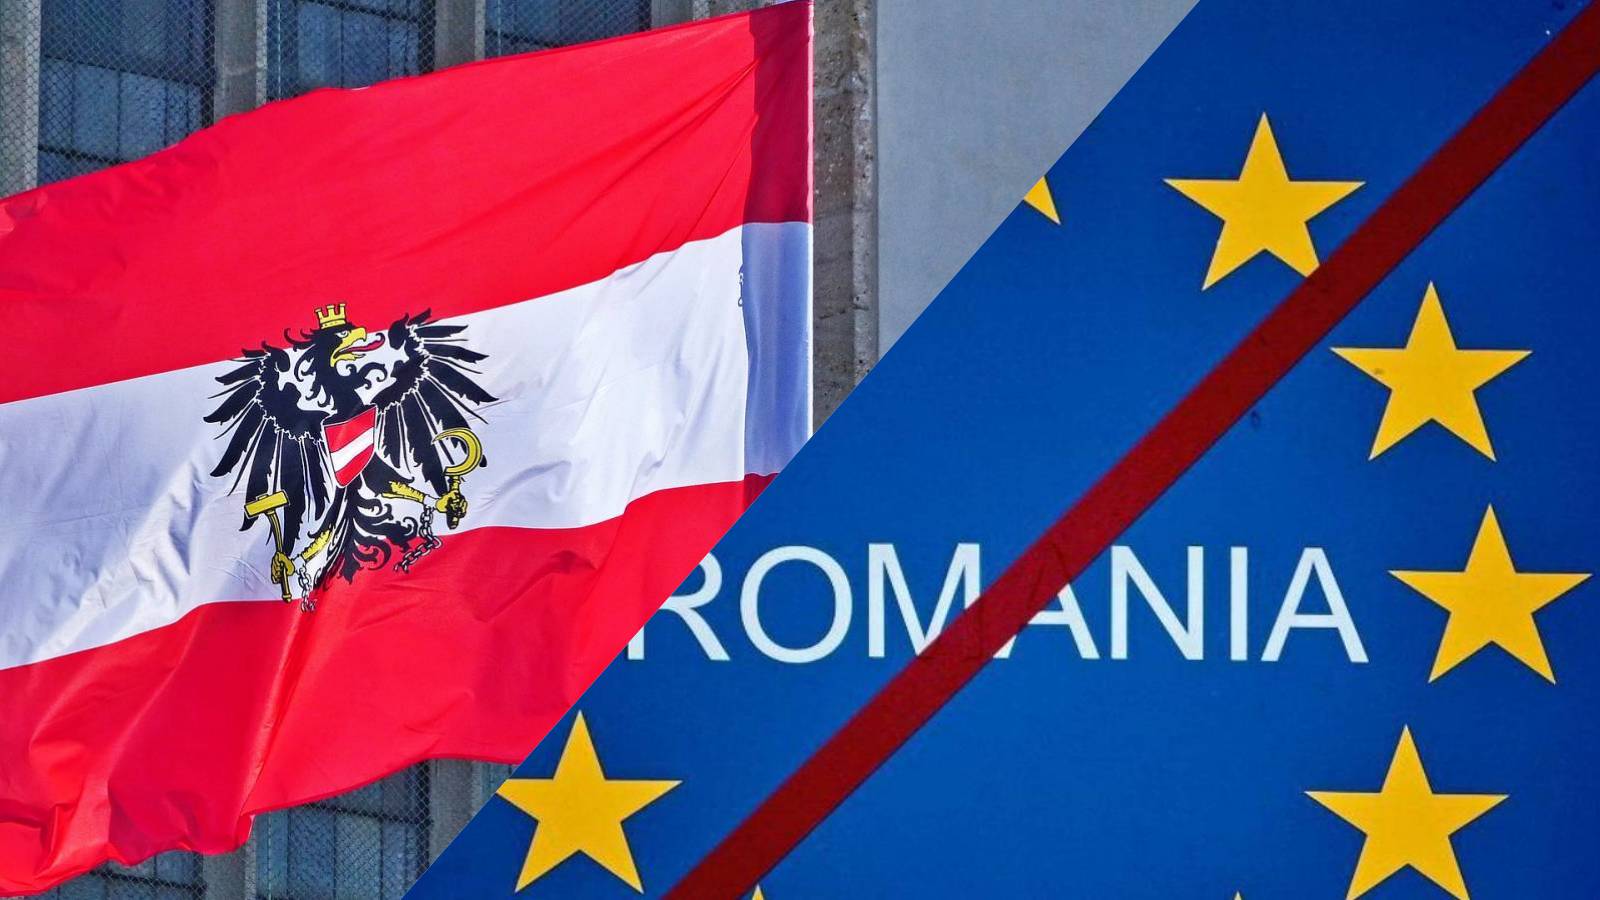 L'Austria richiede urgentemente nuove importanti misure che blocchino l'adesione della Romania a Schengen